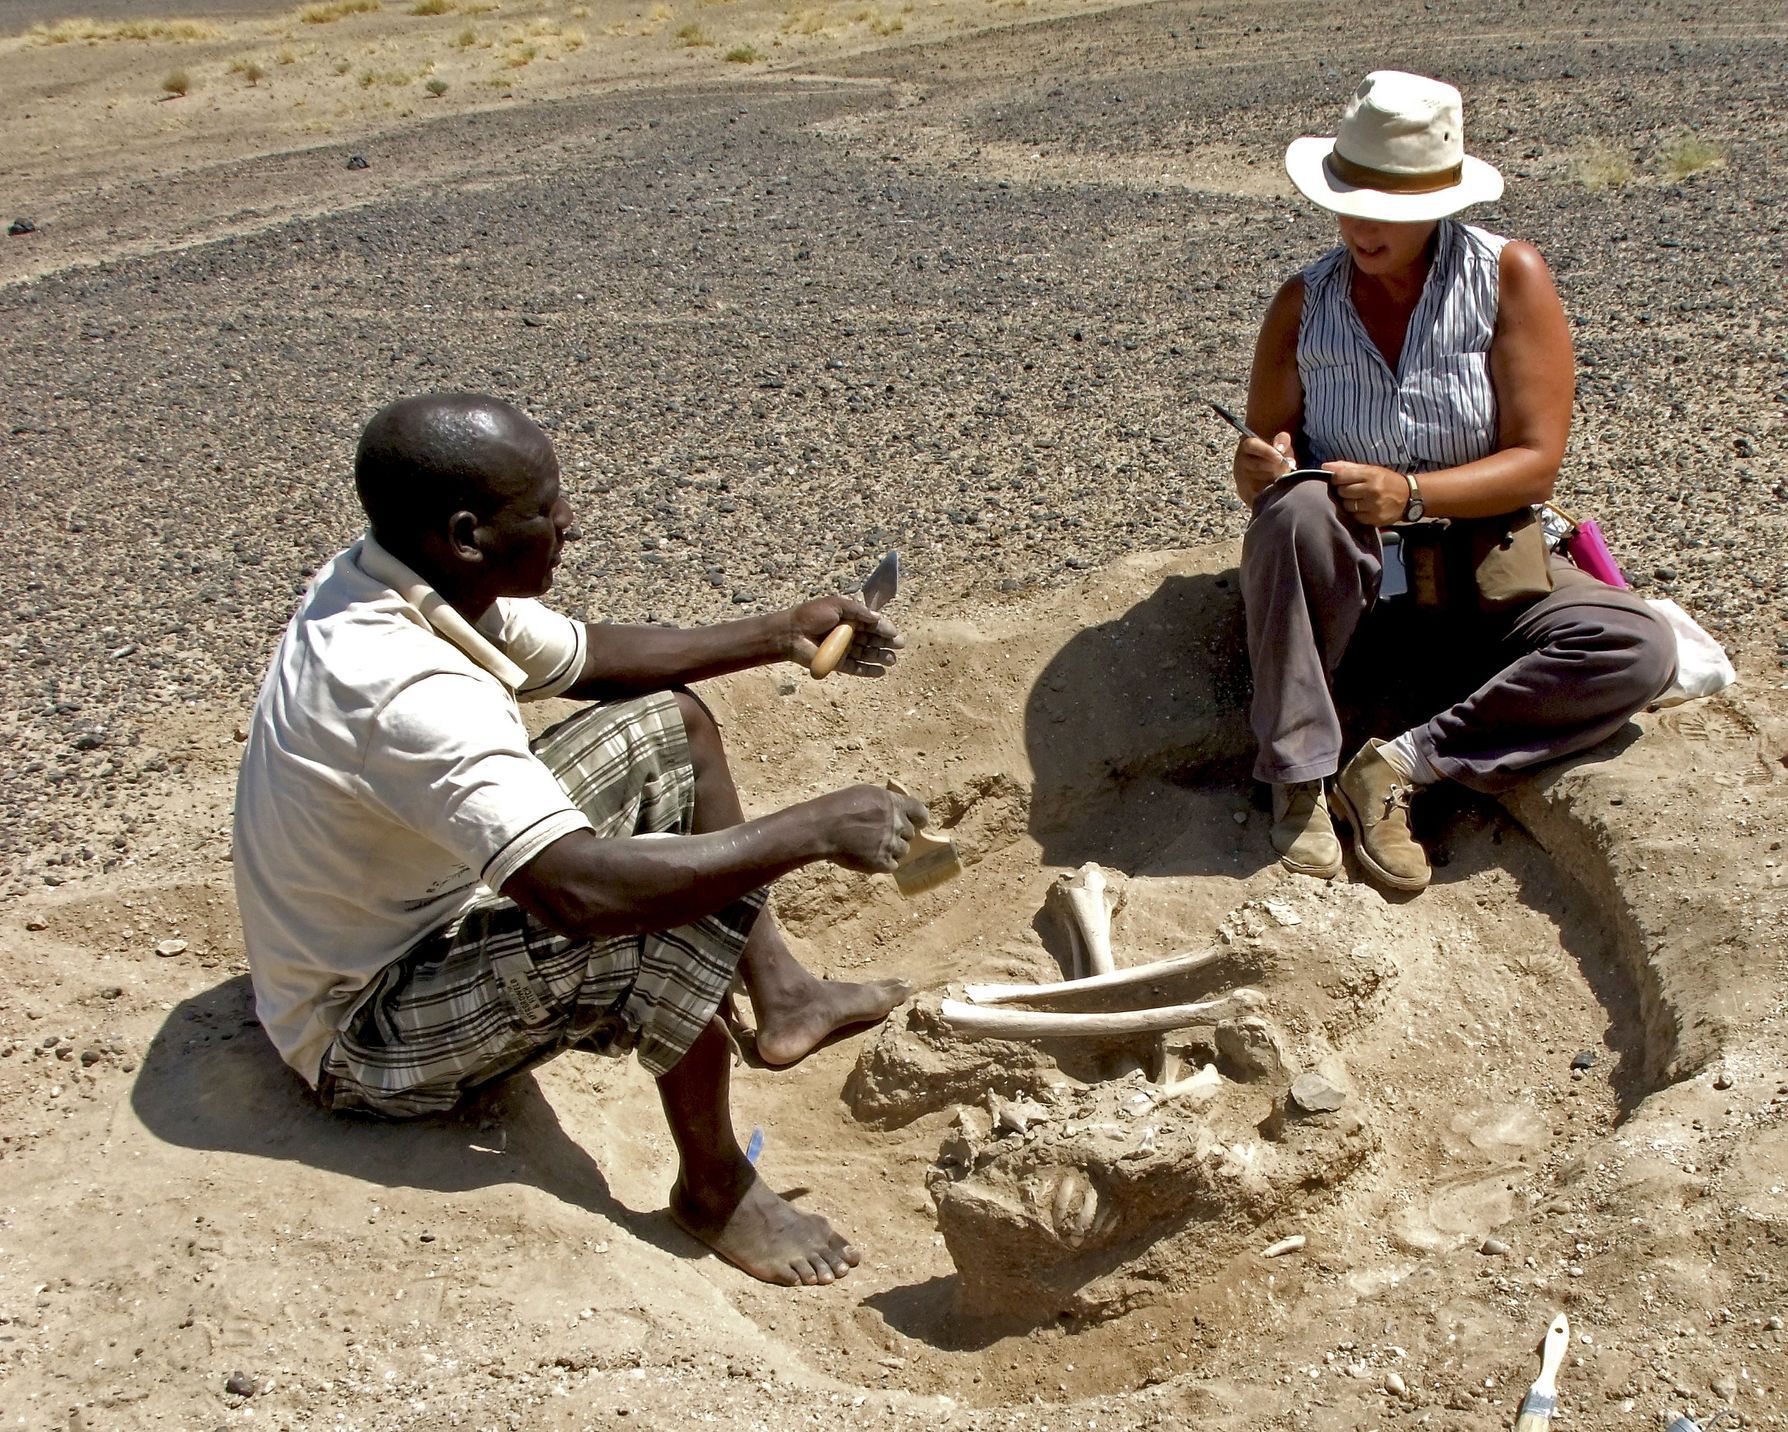 Archeologové objevili v Keni ostatky lidí, které dokazují boje mezi lovci-sběrači.